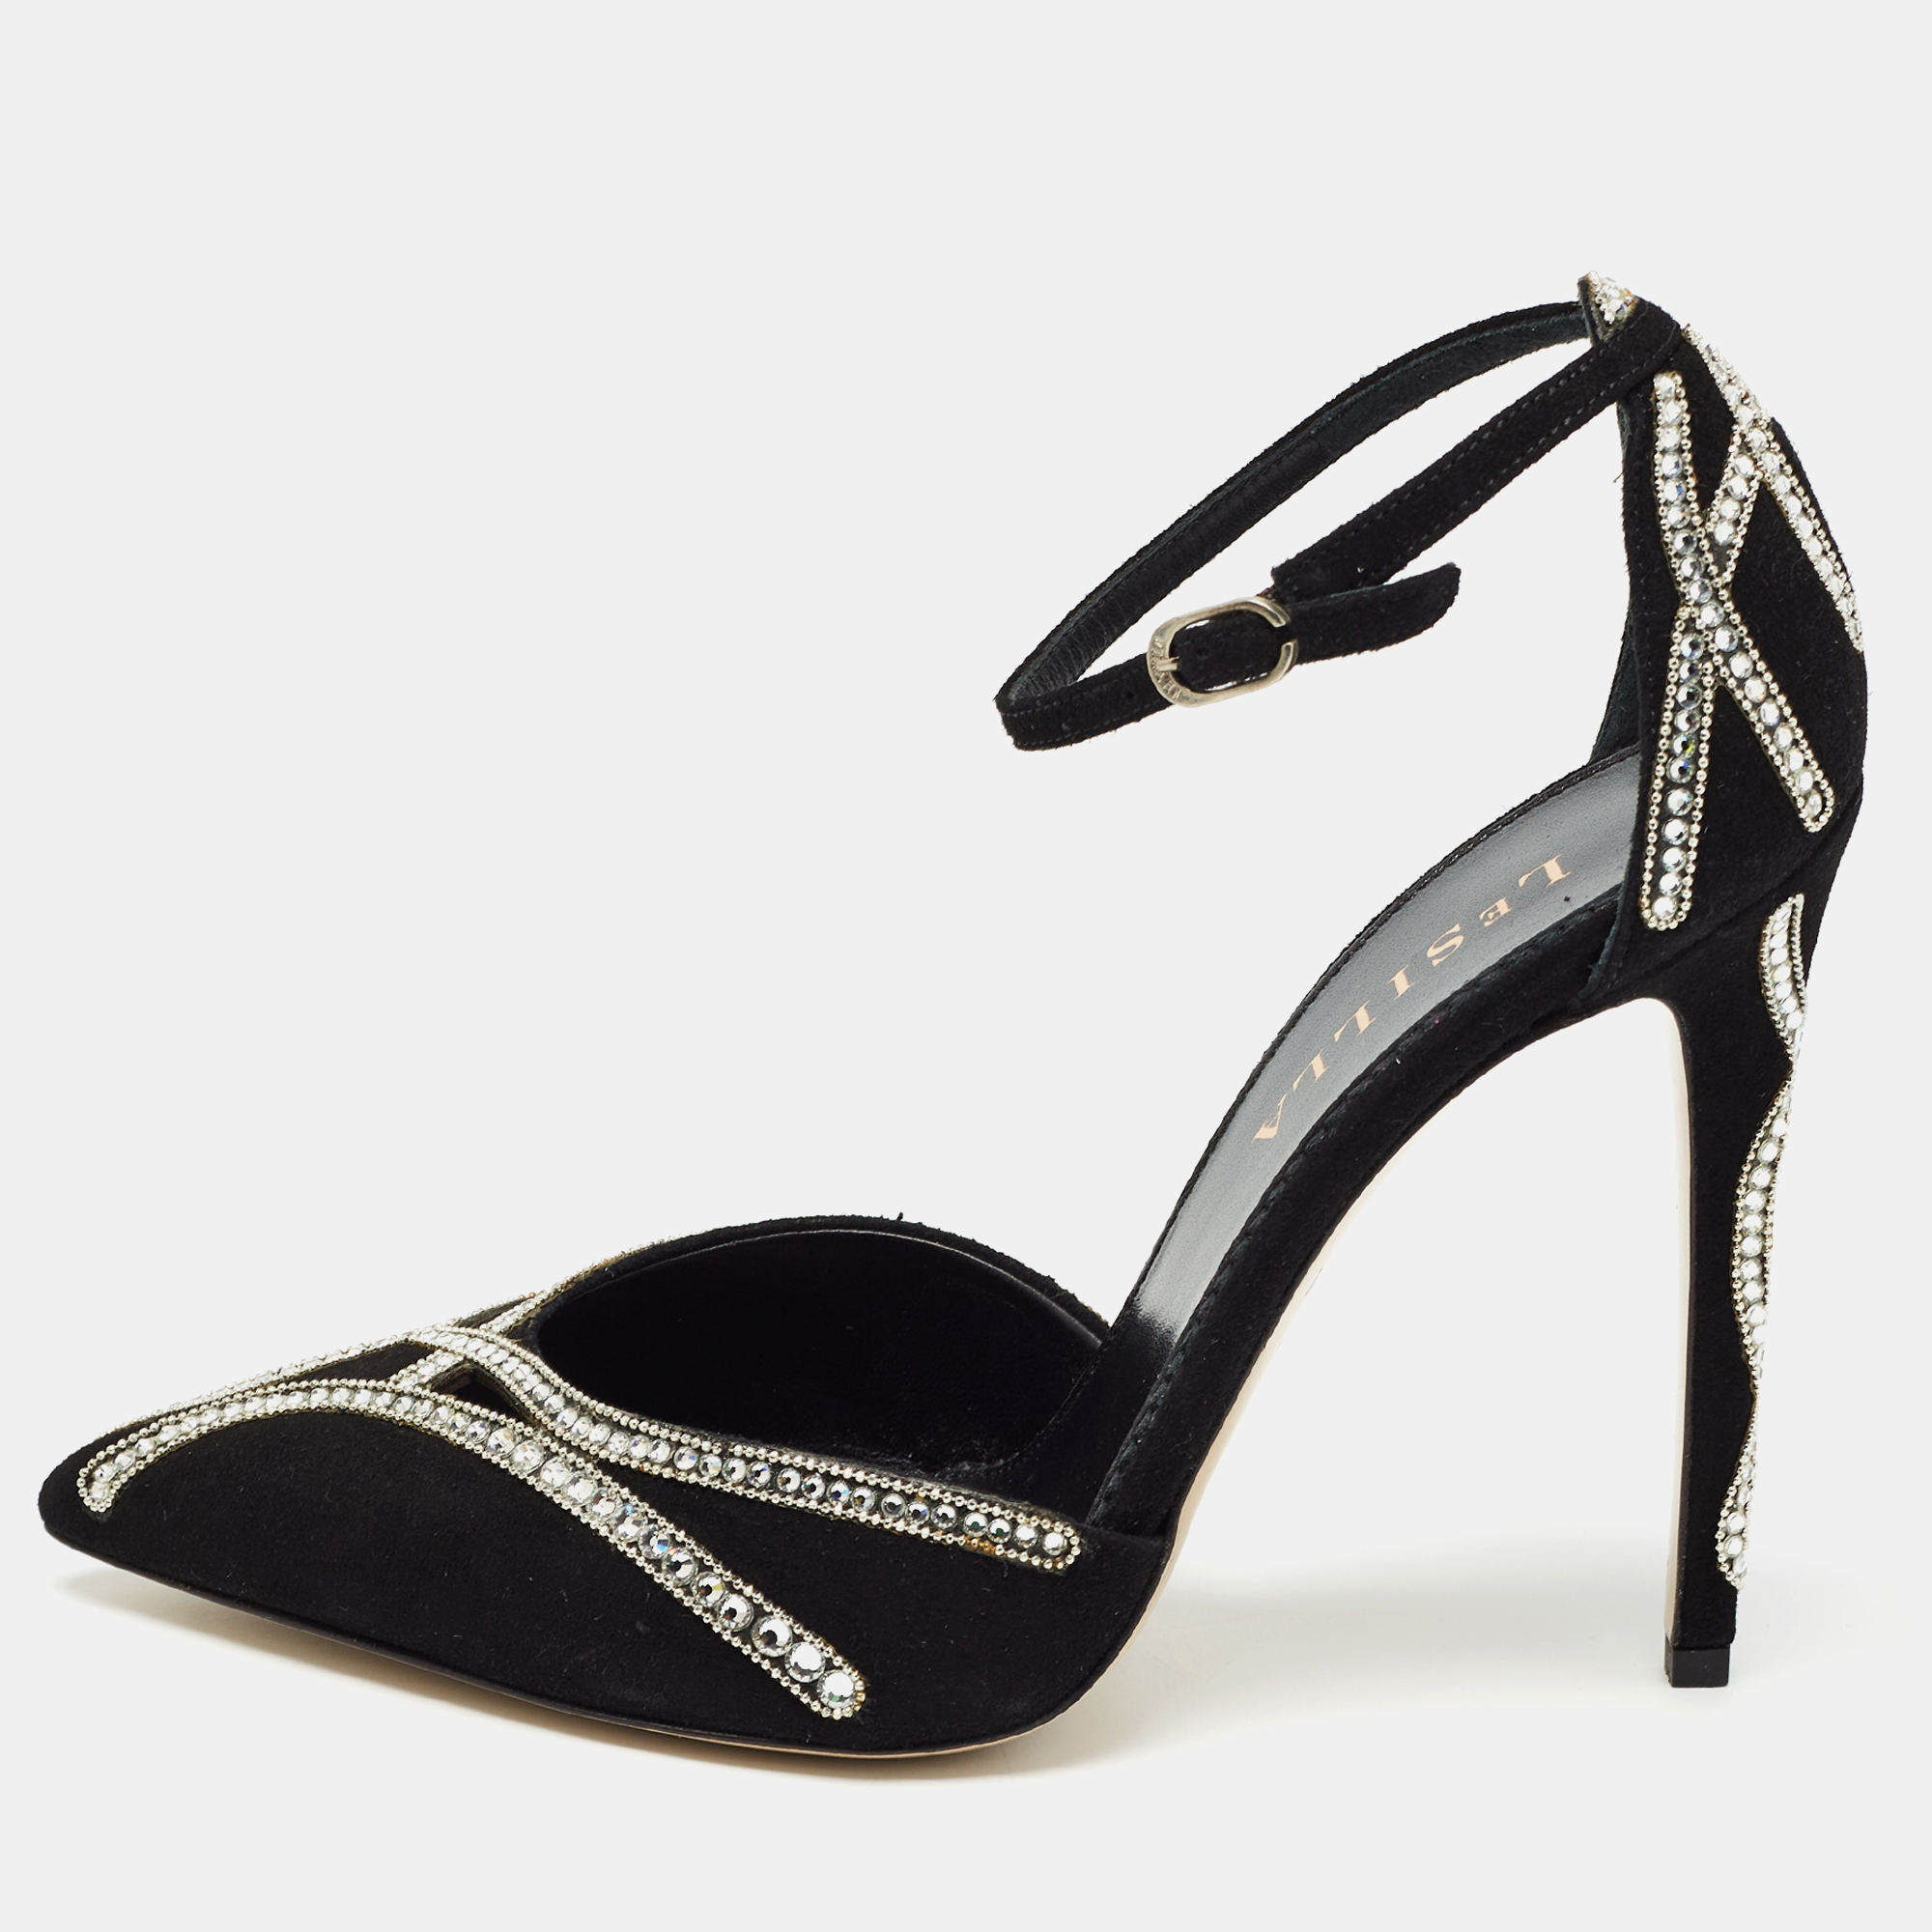 

Le Silla Black Suede Crystal Embellished Ankle Strap Pumps Size